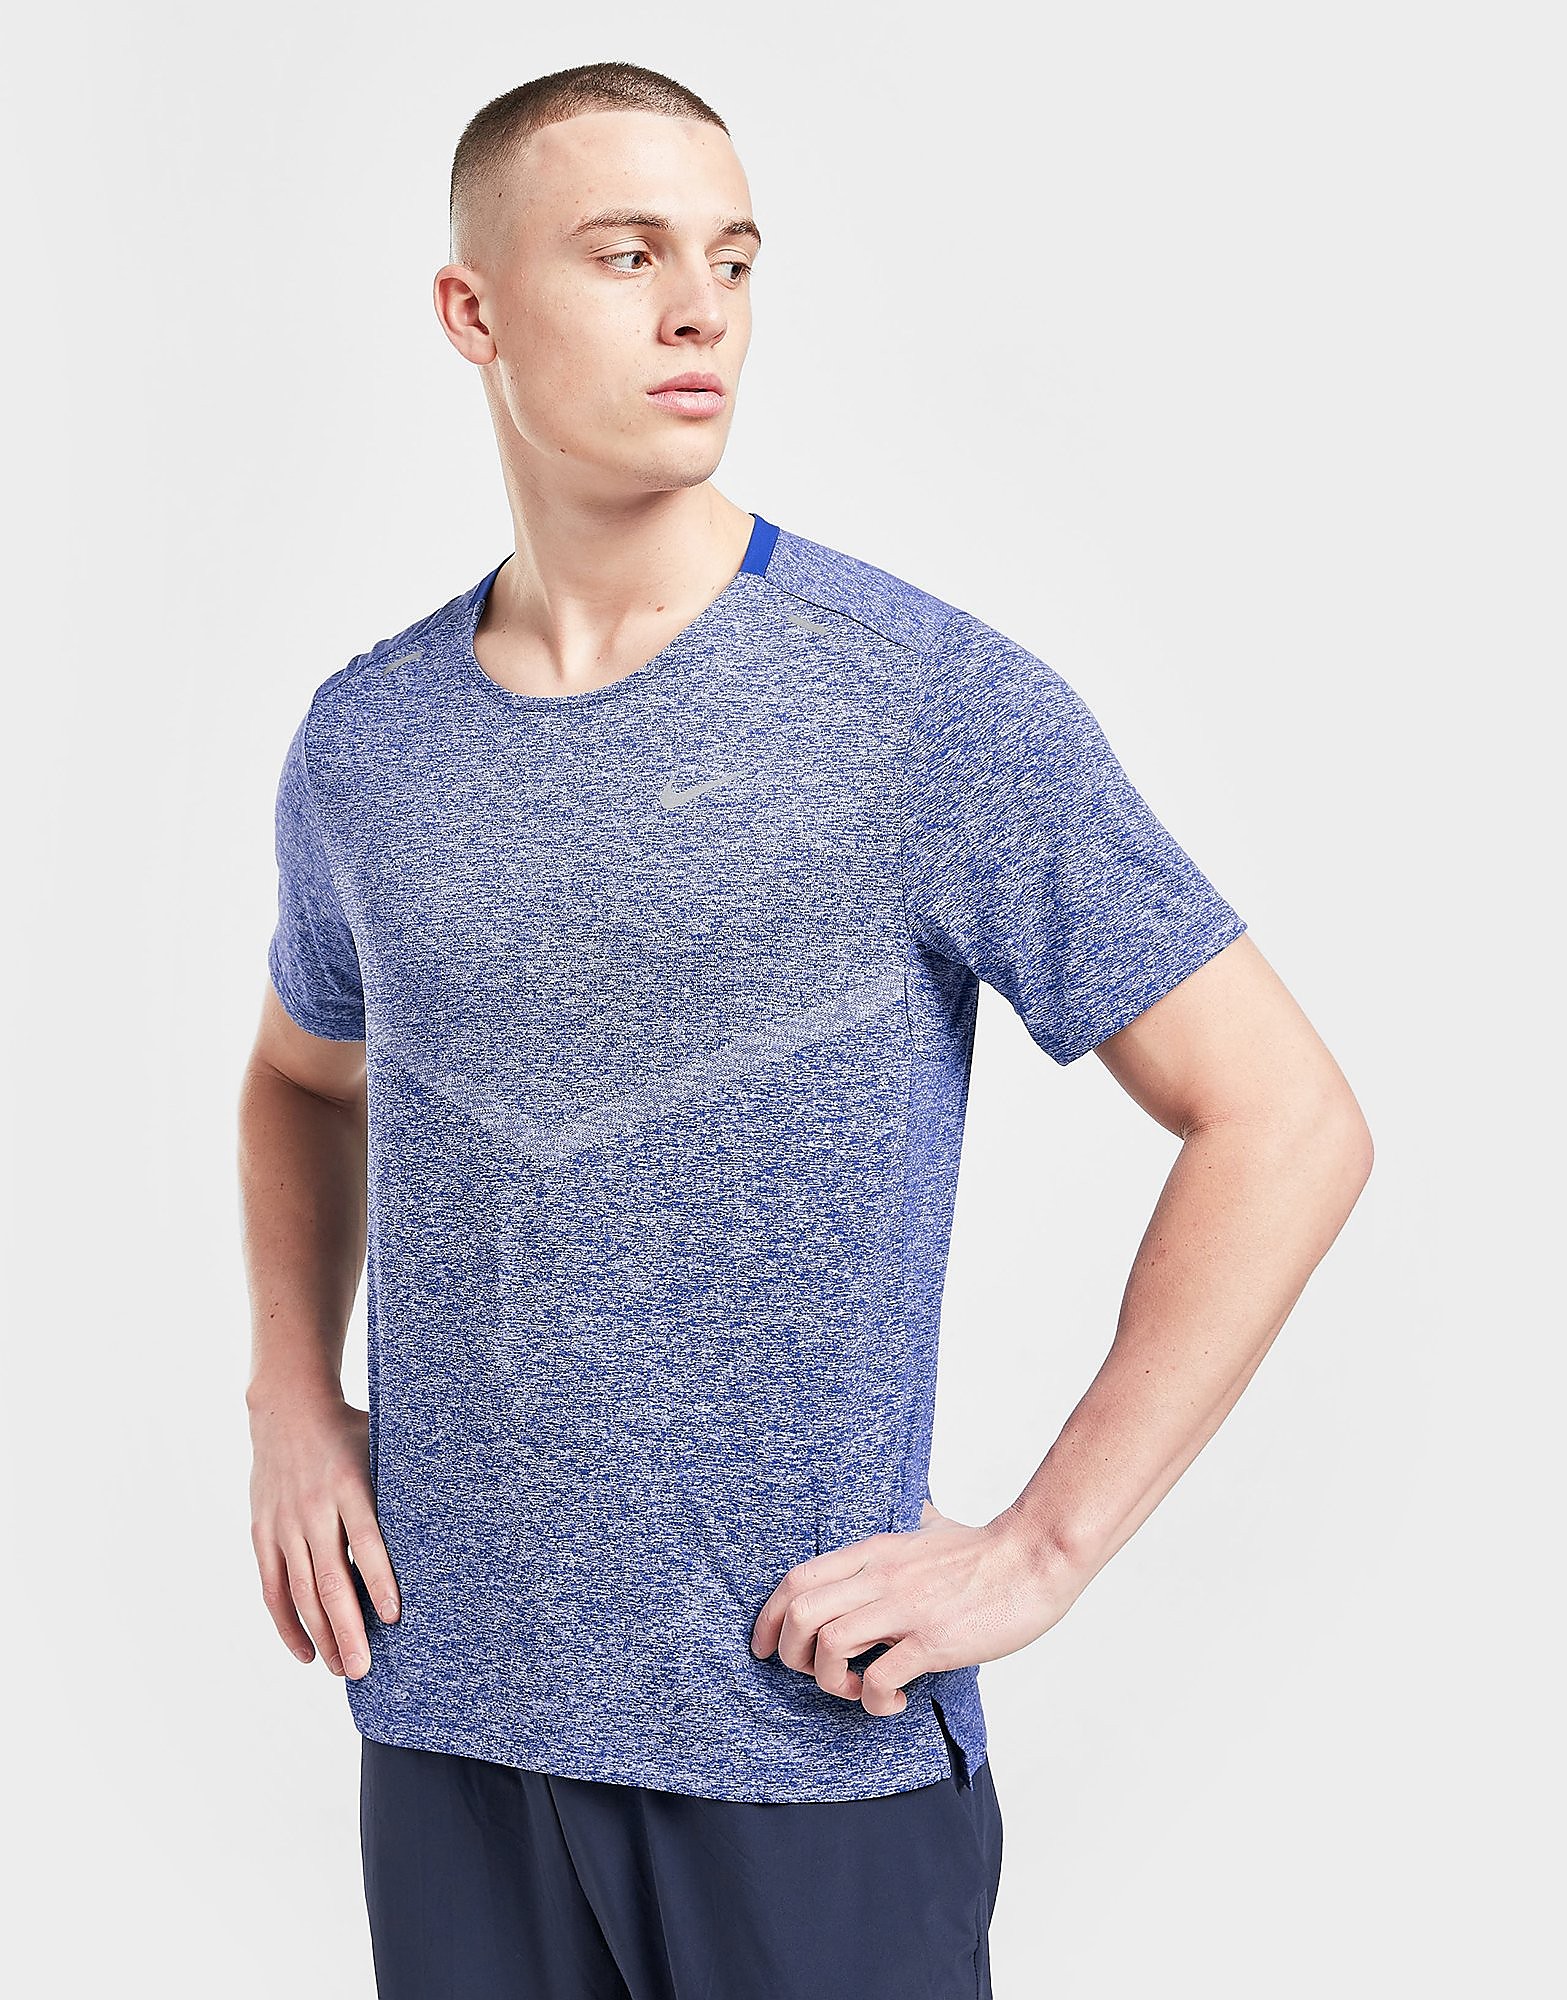 Nike T-Shirt Rise 365 - Azul - Mens, Azul